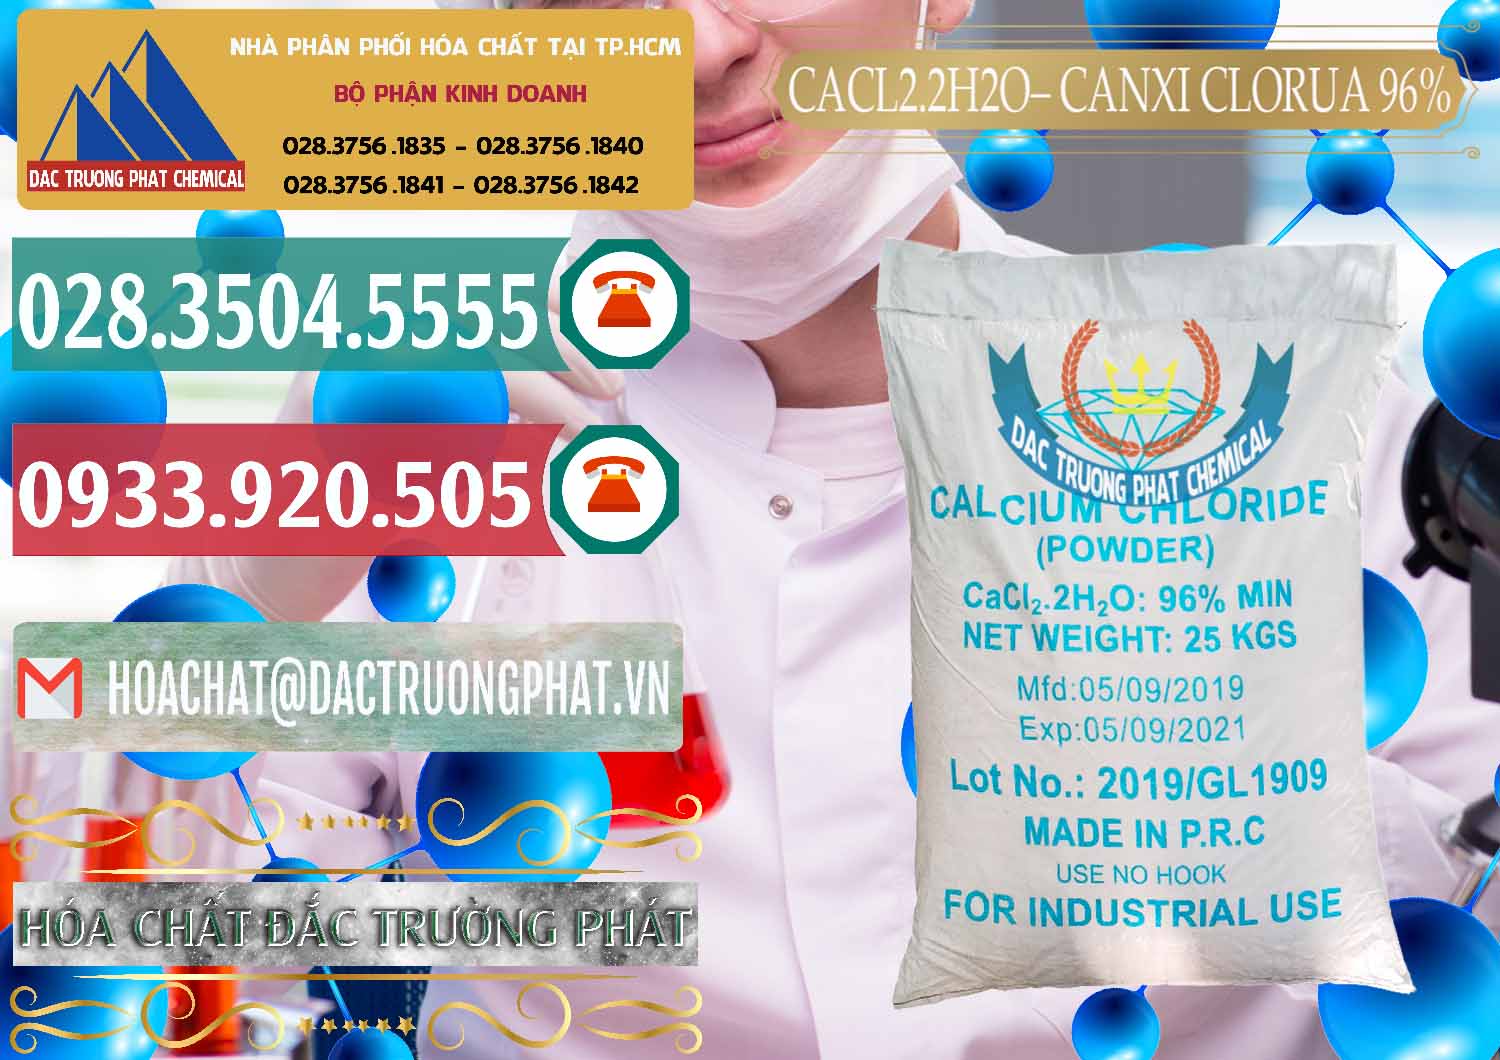 Công ty chuyên bán & cung cấp CaCl2 – Canxi Clorua 96% Logo Kim Cương Trung Quốc China - 0040 - Nơi chuyên cung cấp & kinh doanh hóa chất tại TP.HCM - muabanhoachat.vn